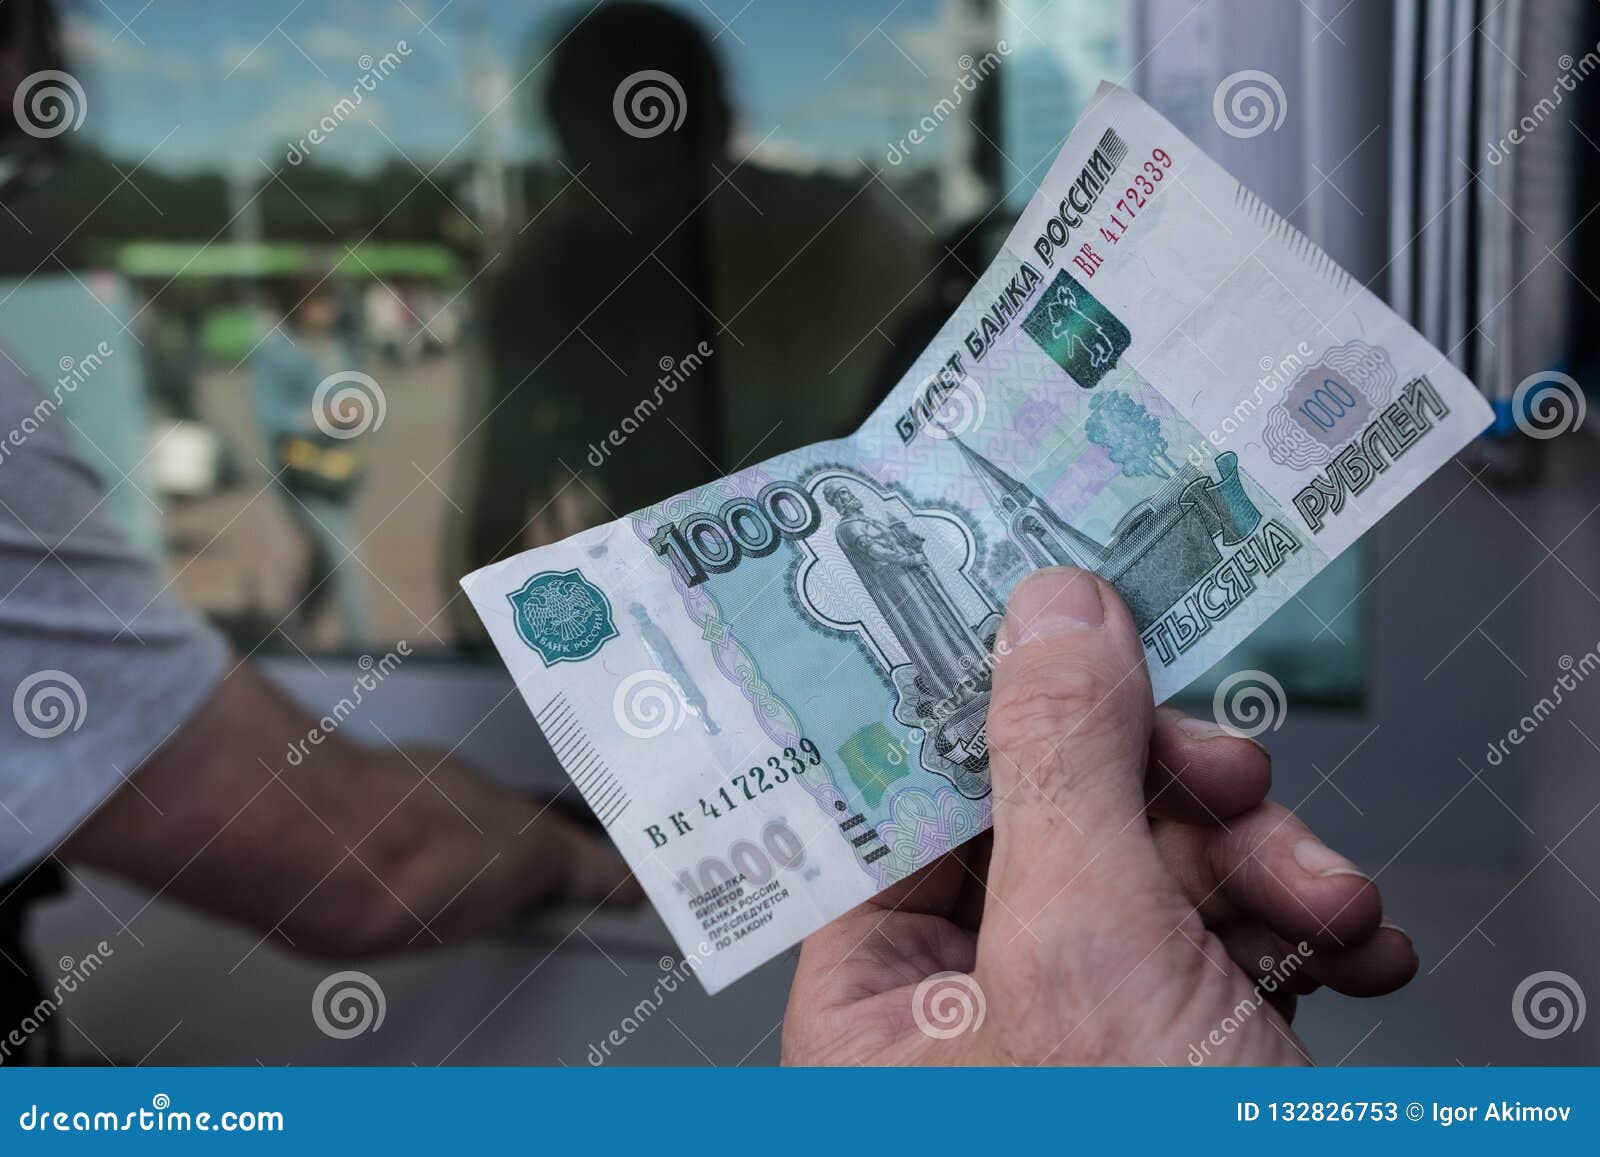 Россия на беларусь обмен валюты комплектующие для майнинга 2022